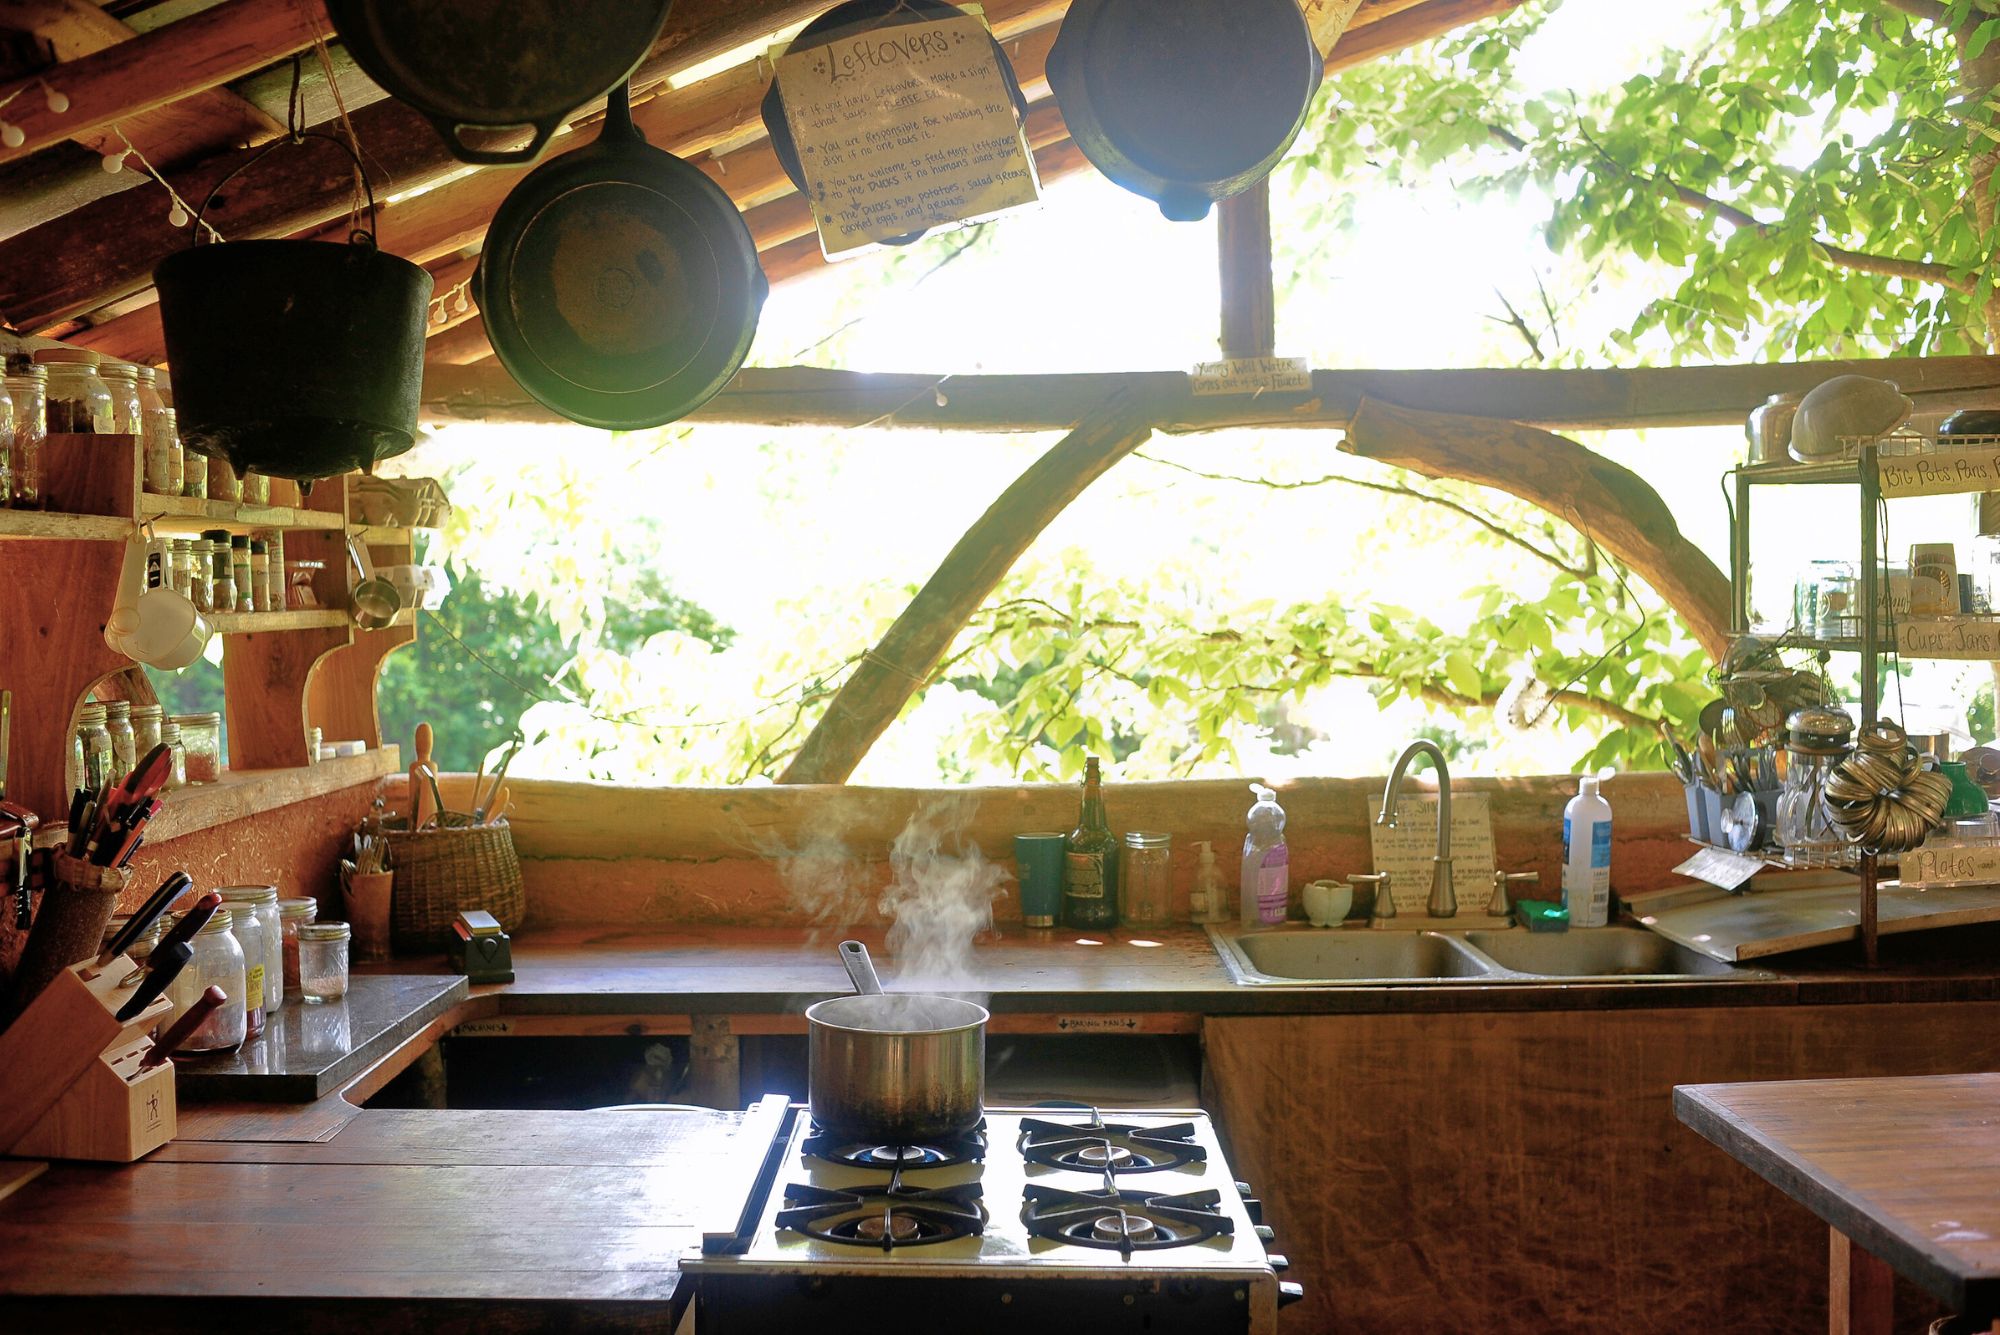 A view inside the outdoor kitchen at Wild Abundance's Sanford Way campus